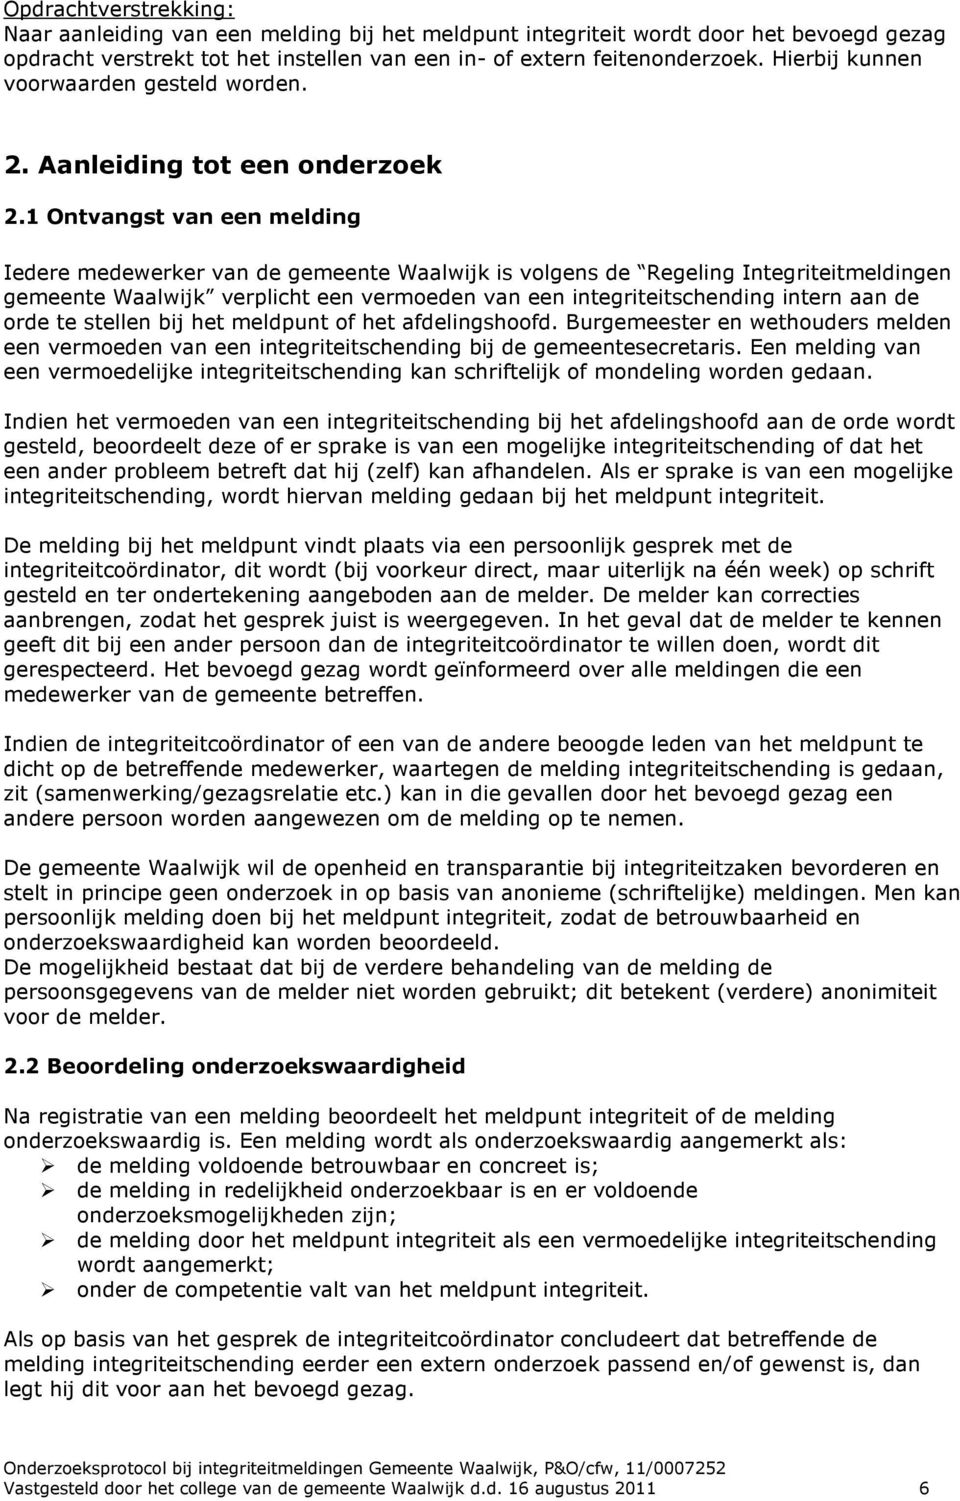 1 Ontvangst van een melding Iedere medewerker van de gemeente Waalwijk is volgens de Regeling Integriteitmeldingen gemeente Waalwijk verplicht een vermoeden van een integriteitschending intern aan de